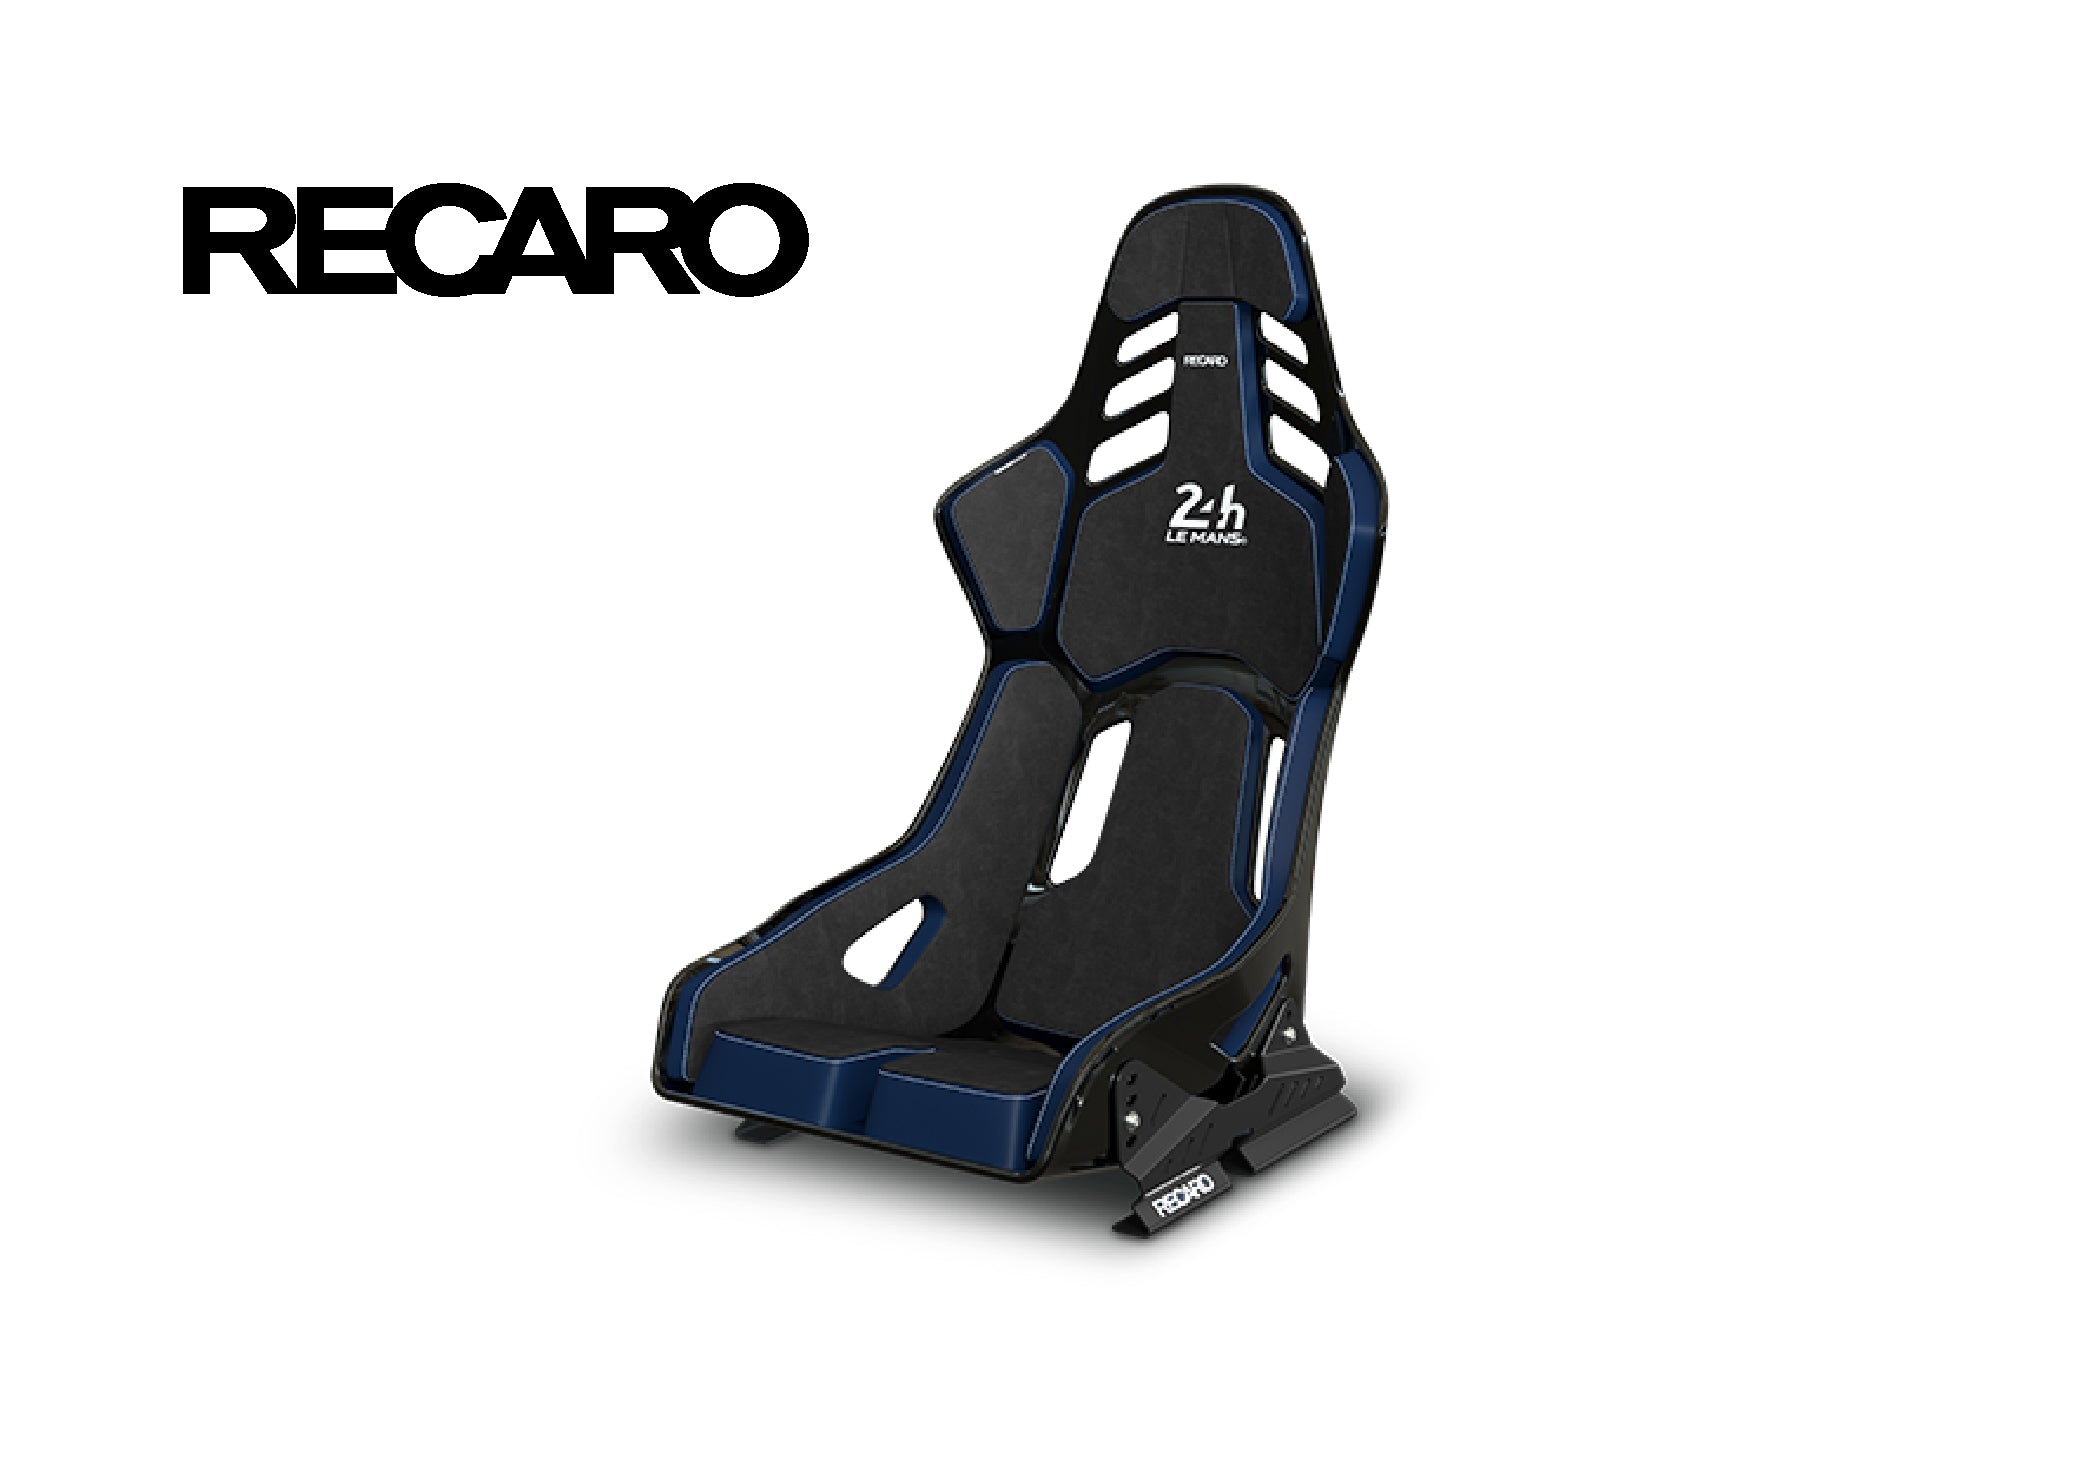 New product from RECARO - RECARO Podium GF 24H Le Mans!